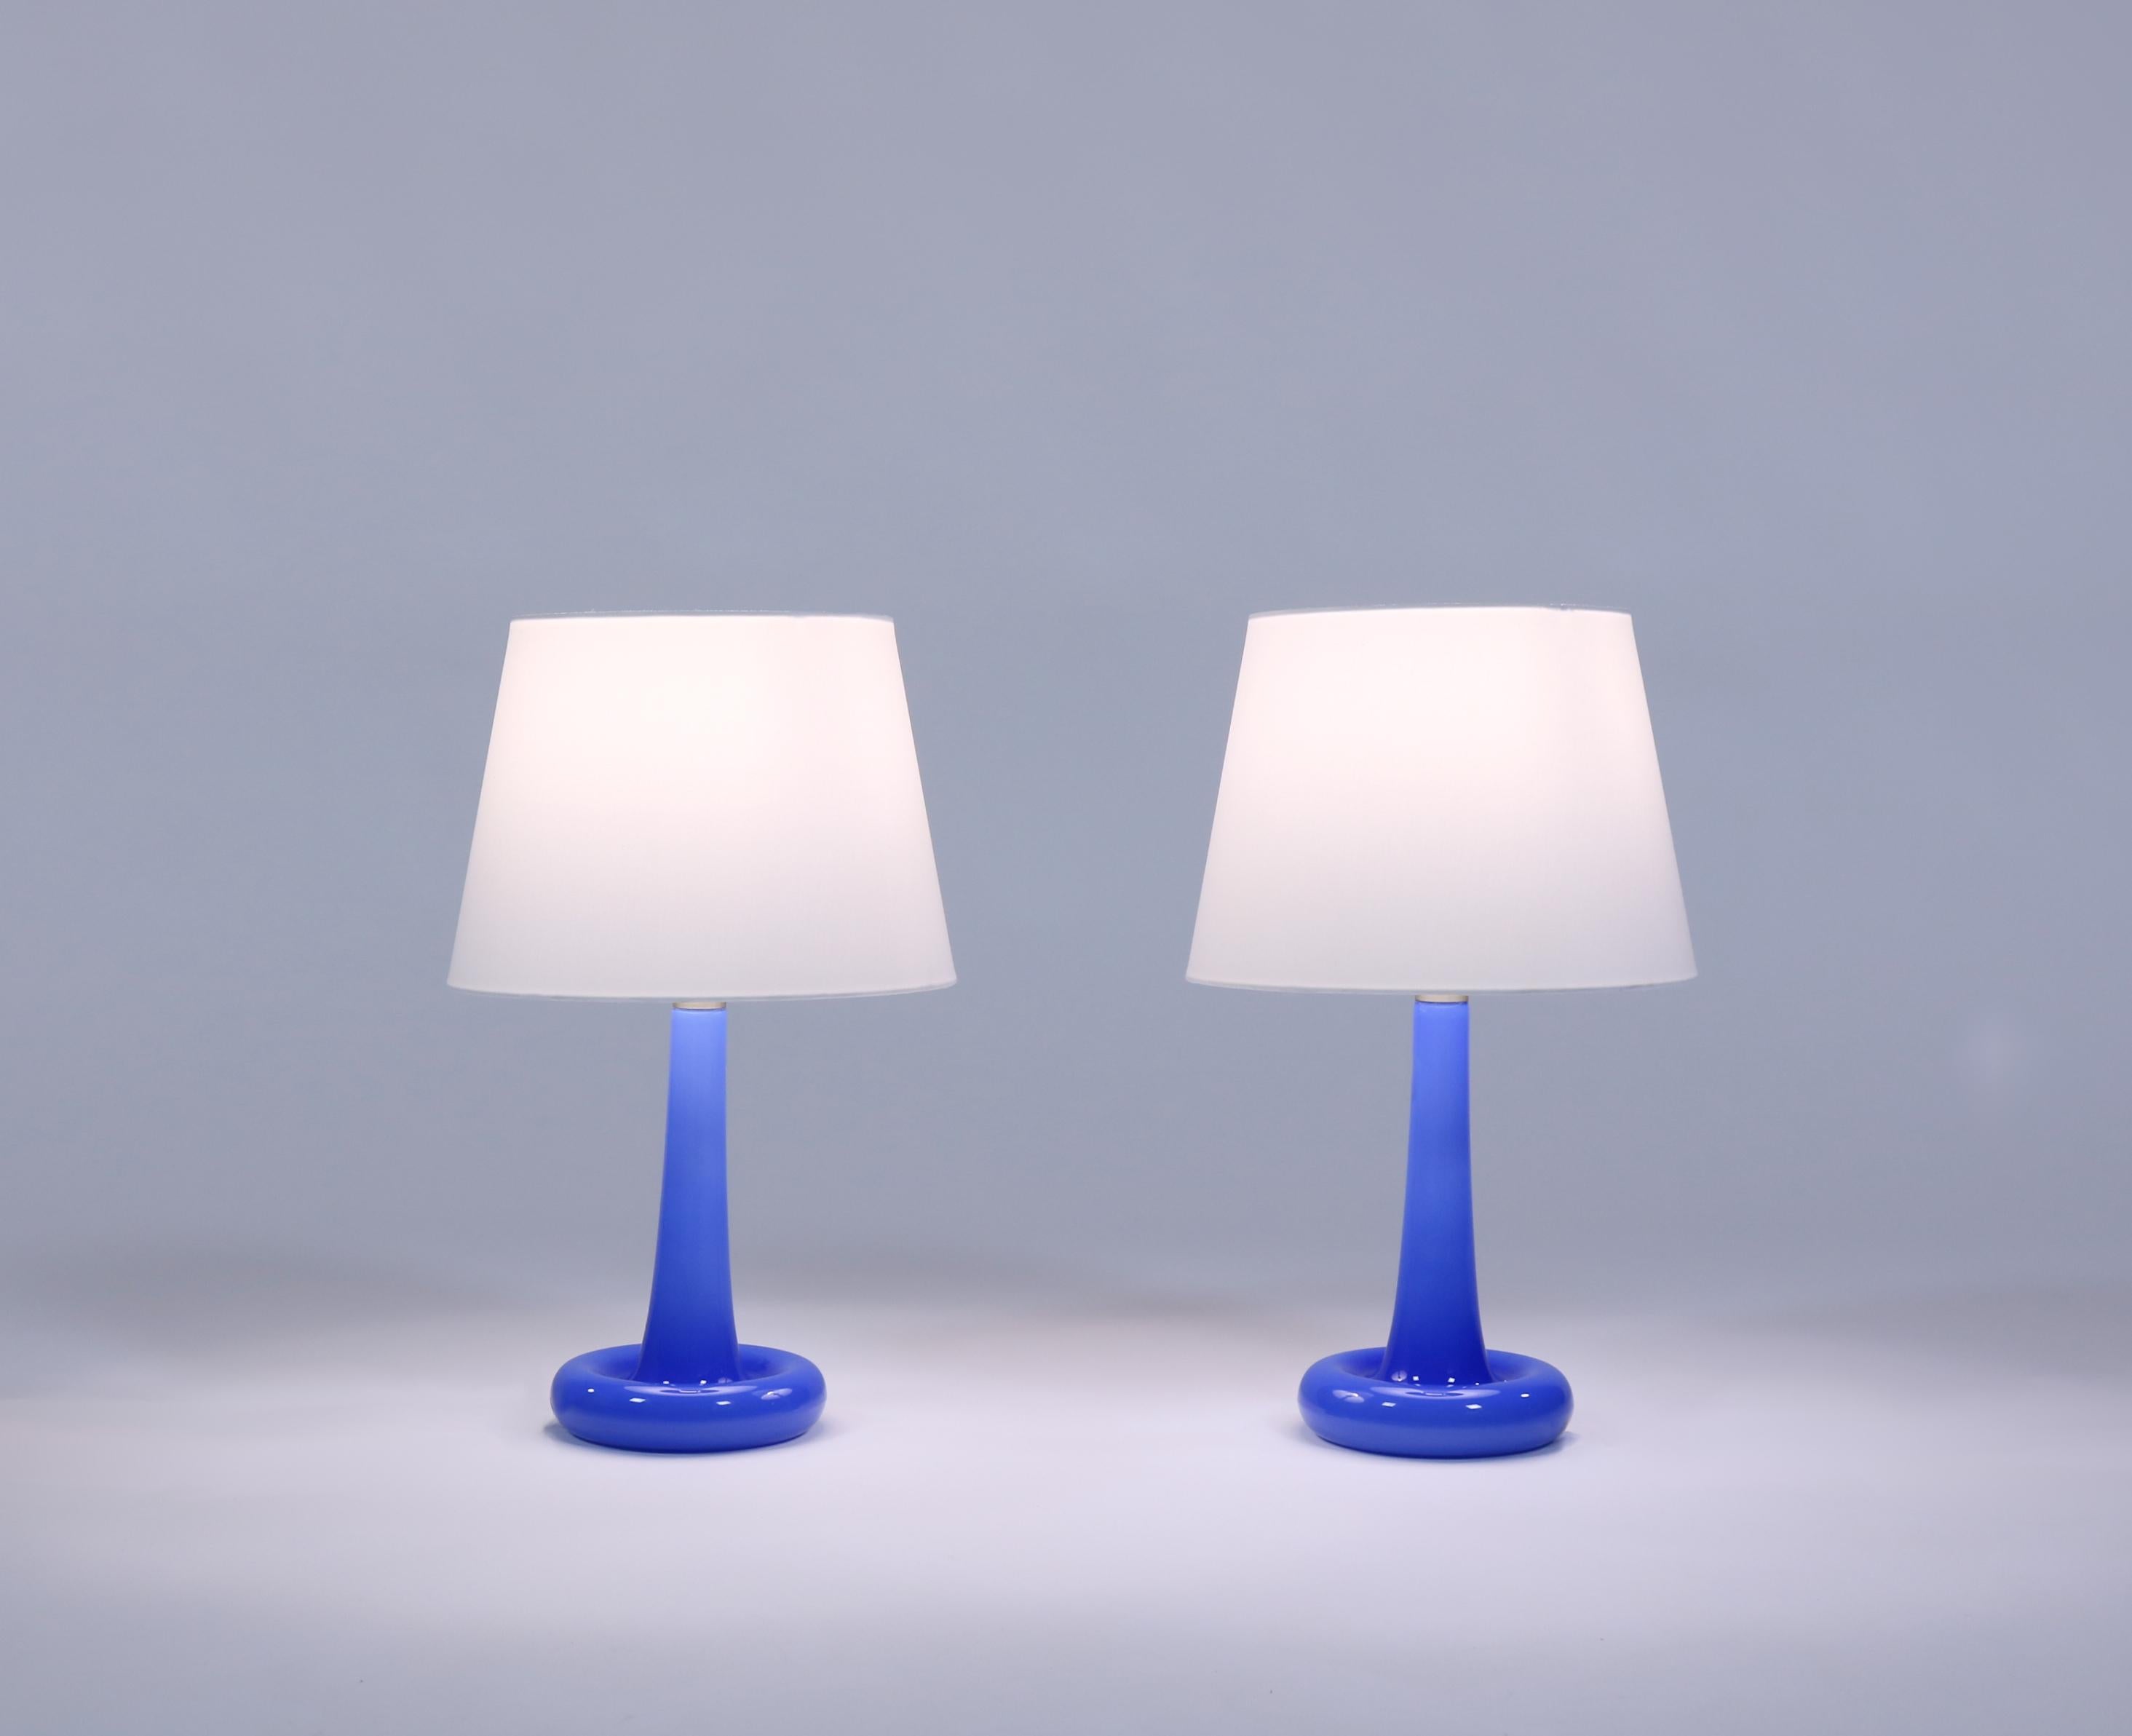 Magnifiques lampes de table bleues fabriquées en 1975 à Holmegaard Glassworks, Copenhague. Le design est signé du célèbre artiste verrier Michael Bang et chaque lampe a été soufflée à la bouche. La forme ressemble à une fleur et le modèle a été